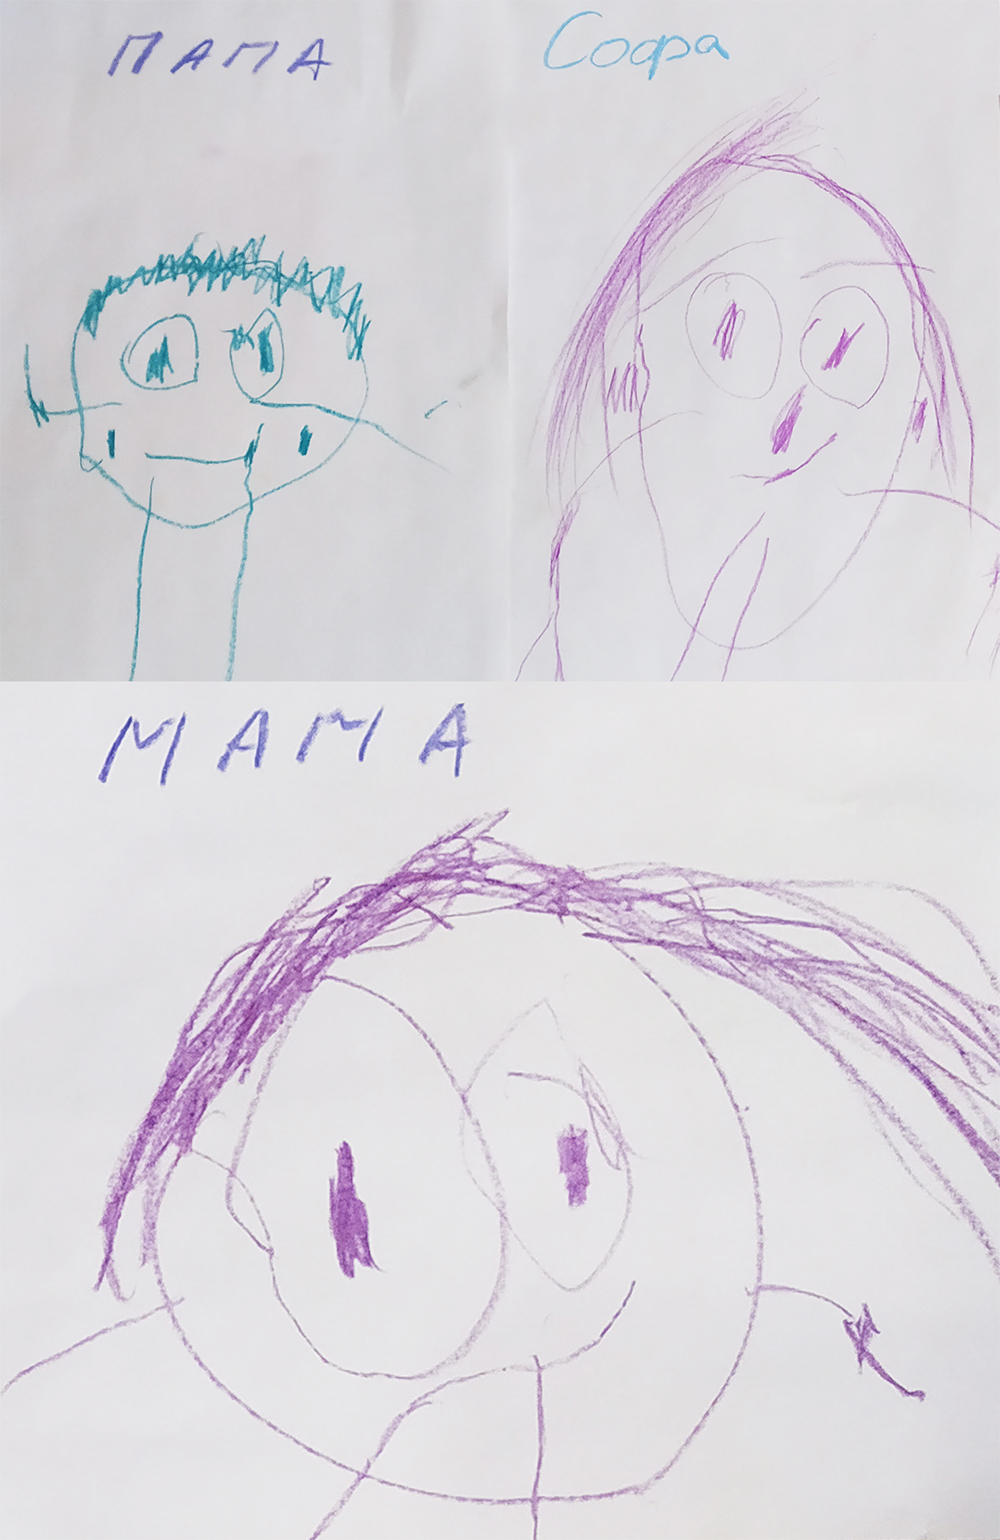 София - Мама, тато, Софія - малюнок конкурсу дитячої творчості в Баку - Азербайджан